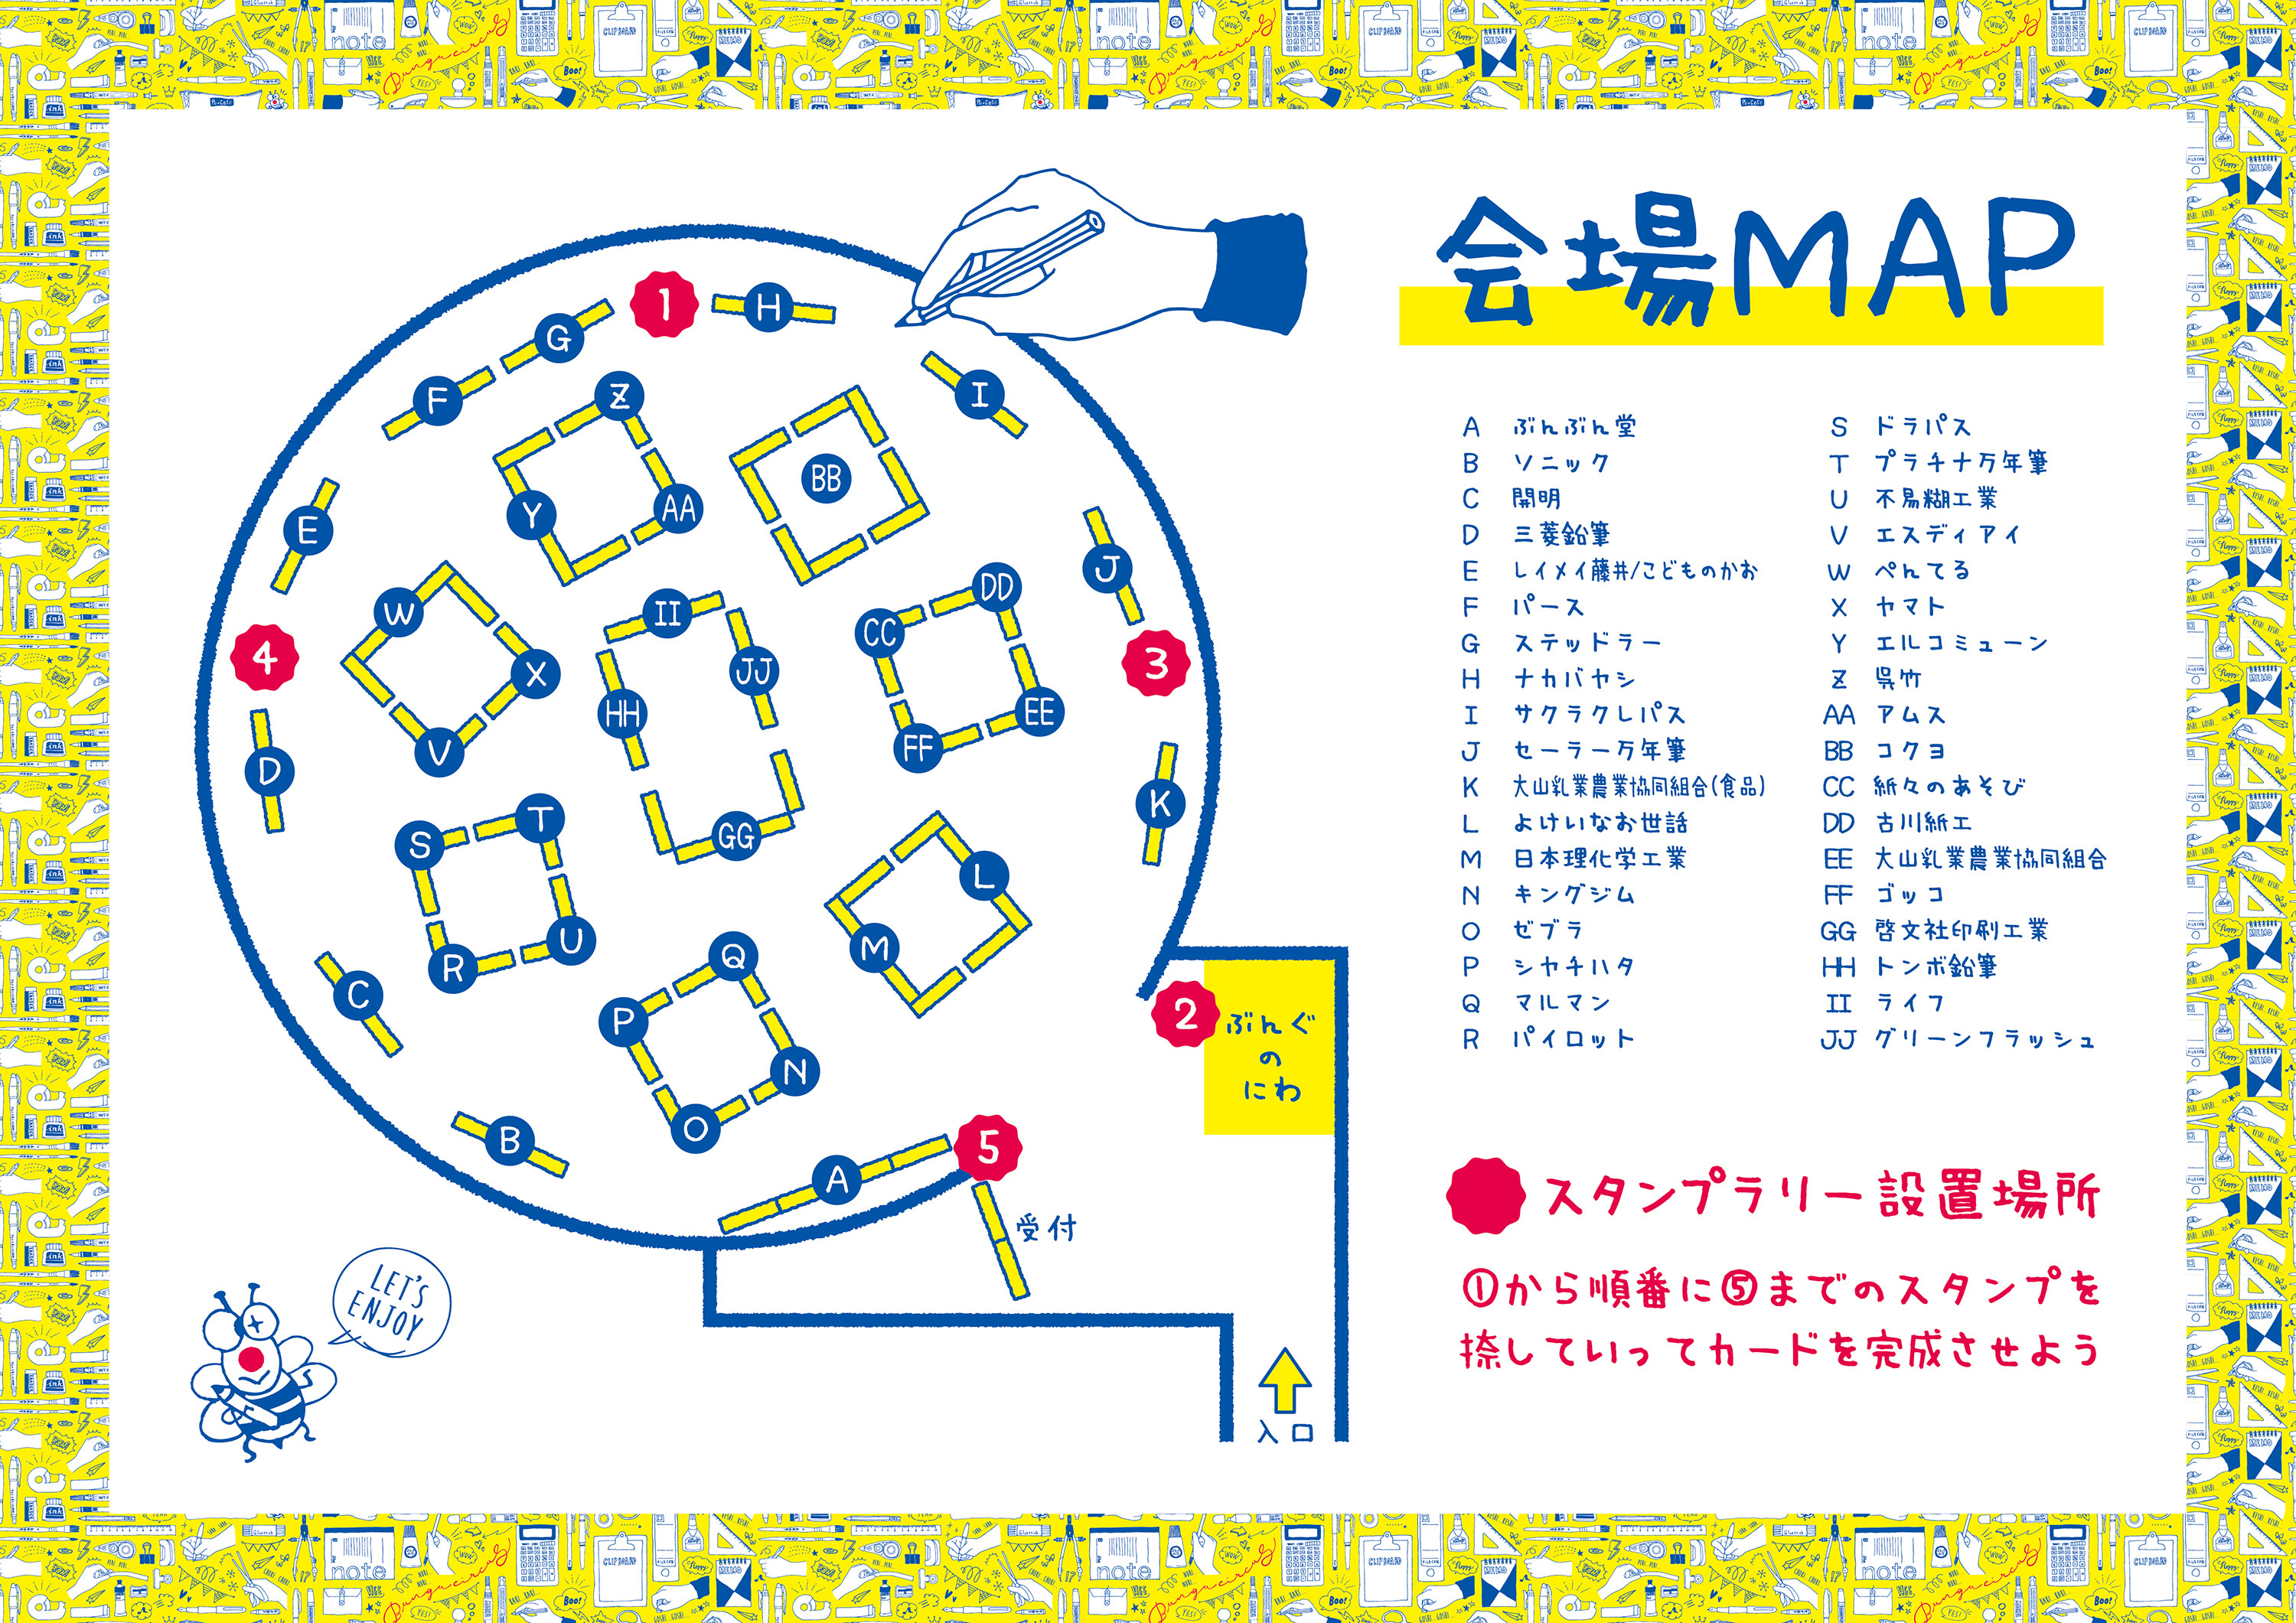 会場MAP-01.jpg